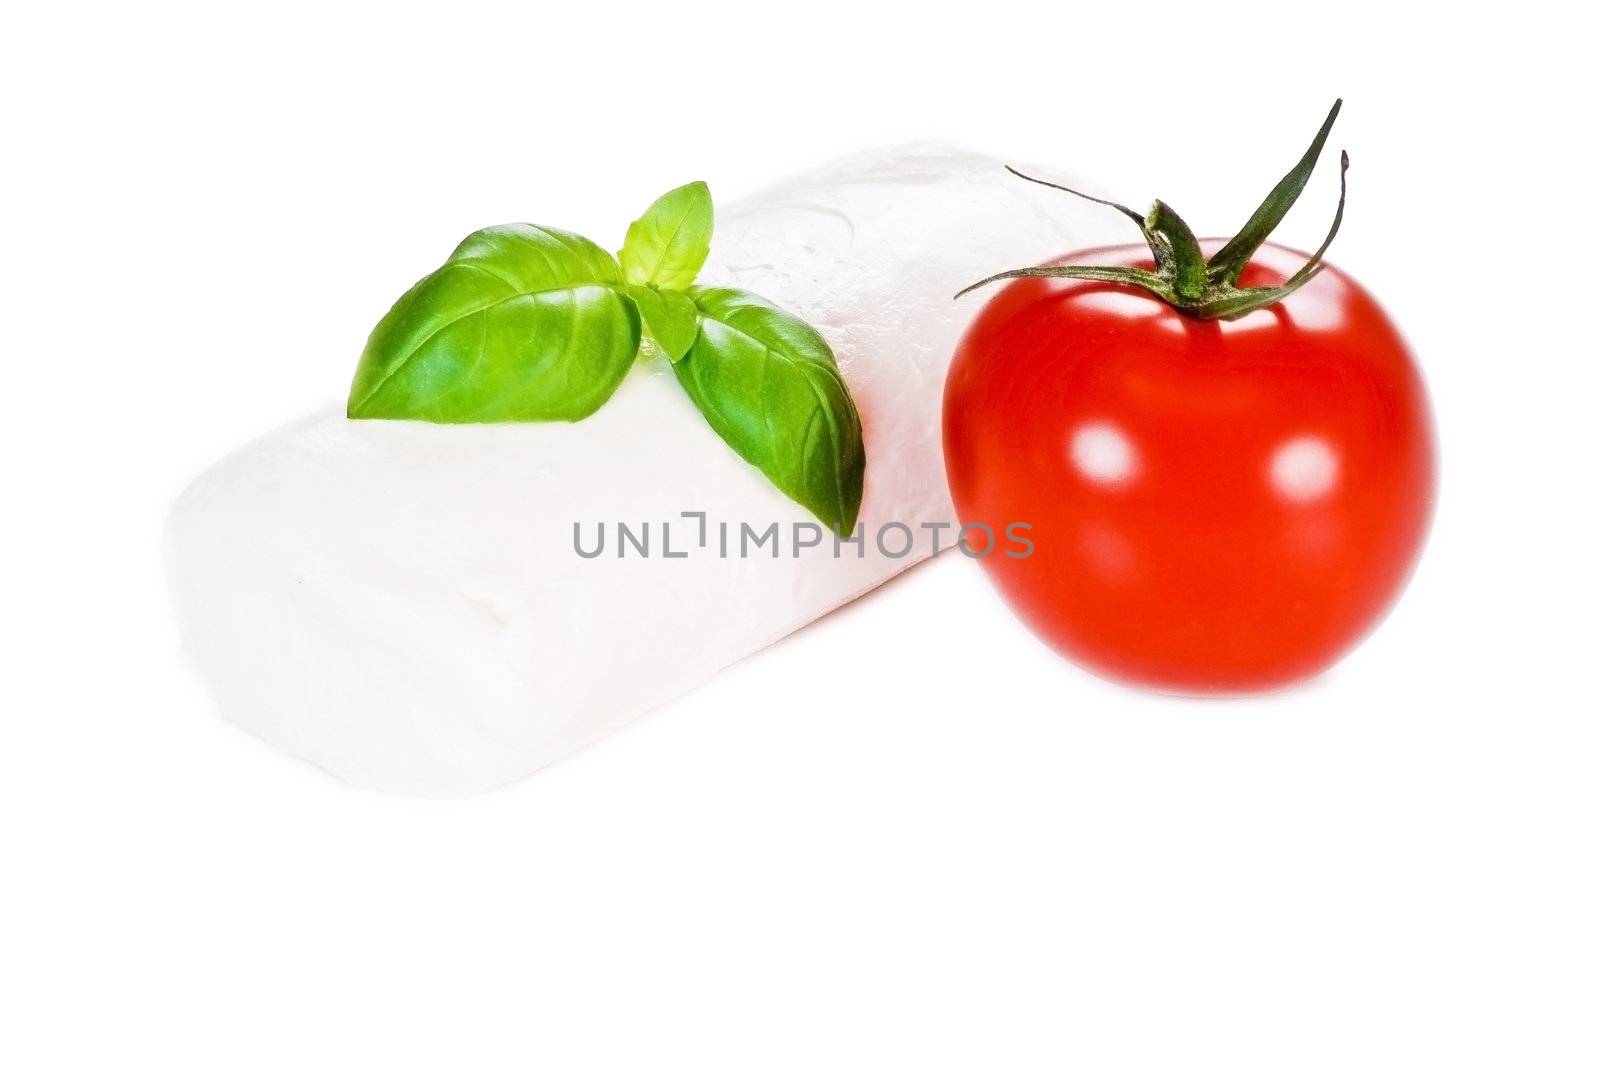 Fresh tomato, basil and mozzarella cheese on white background